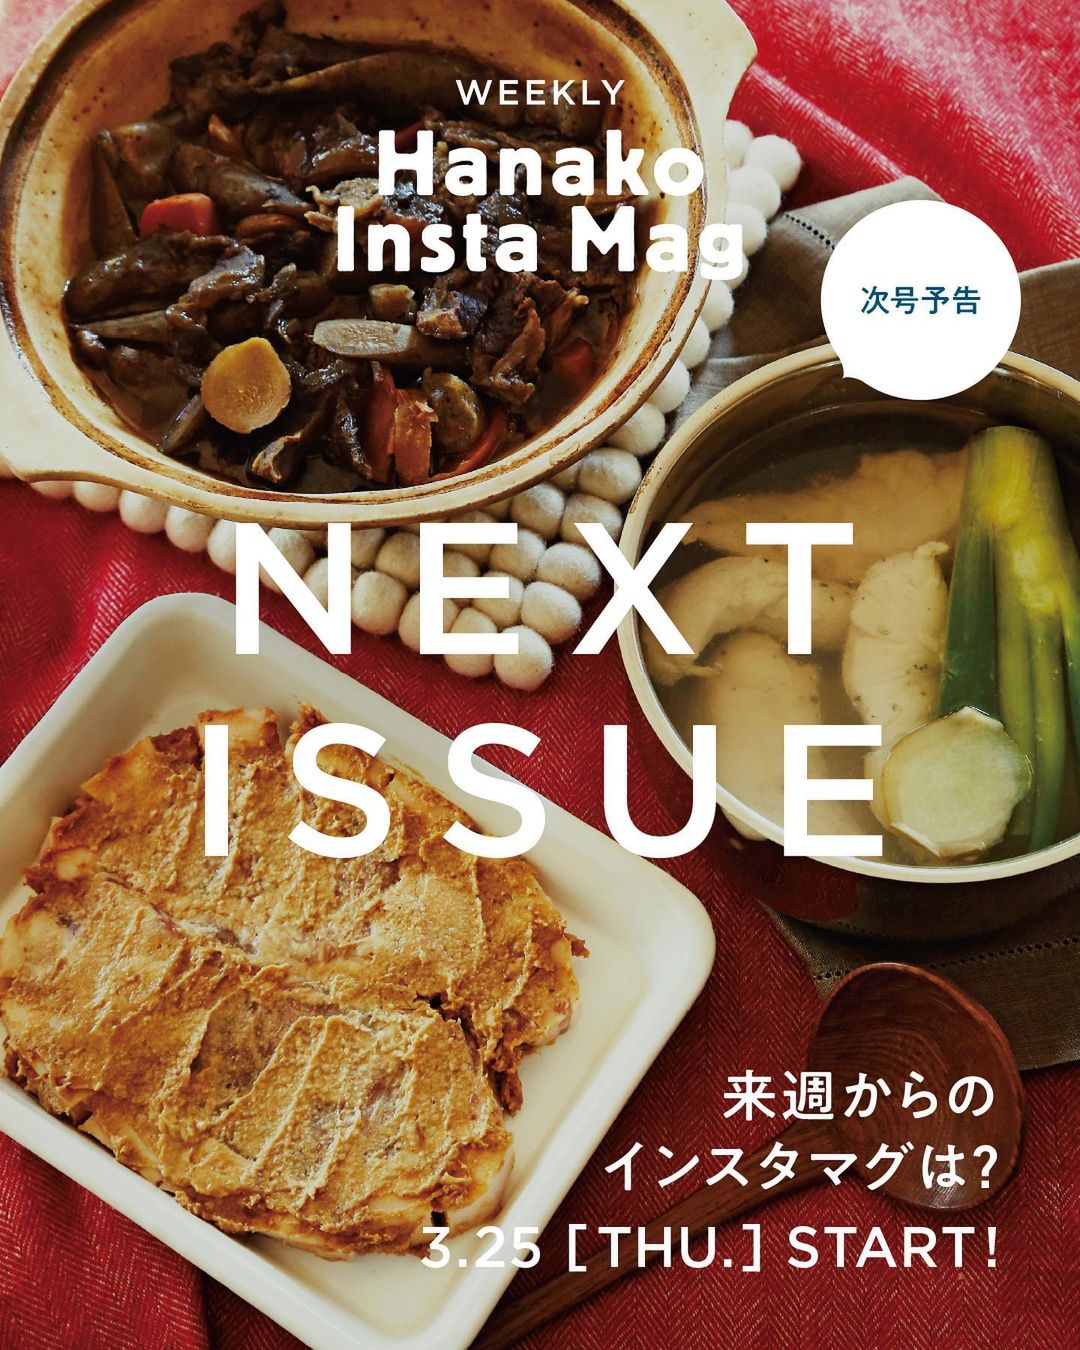 Hanakomagazine 来週からのインスタマグは おこもりクッキング 10秒で見てわかる 見て学ぶ インスタグラムマガジン Hanako Insta Mag Wacoca Japan People Life Style